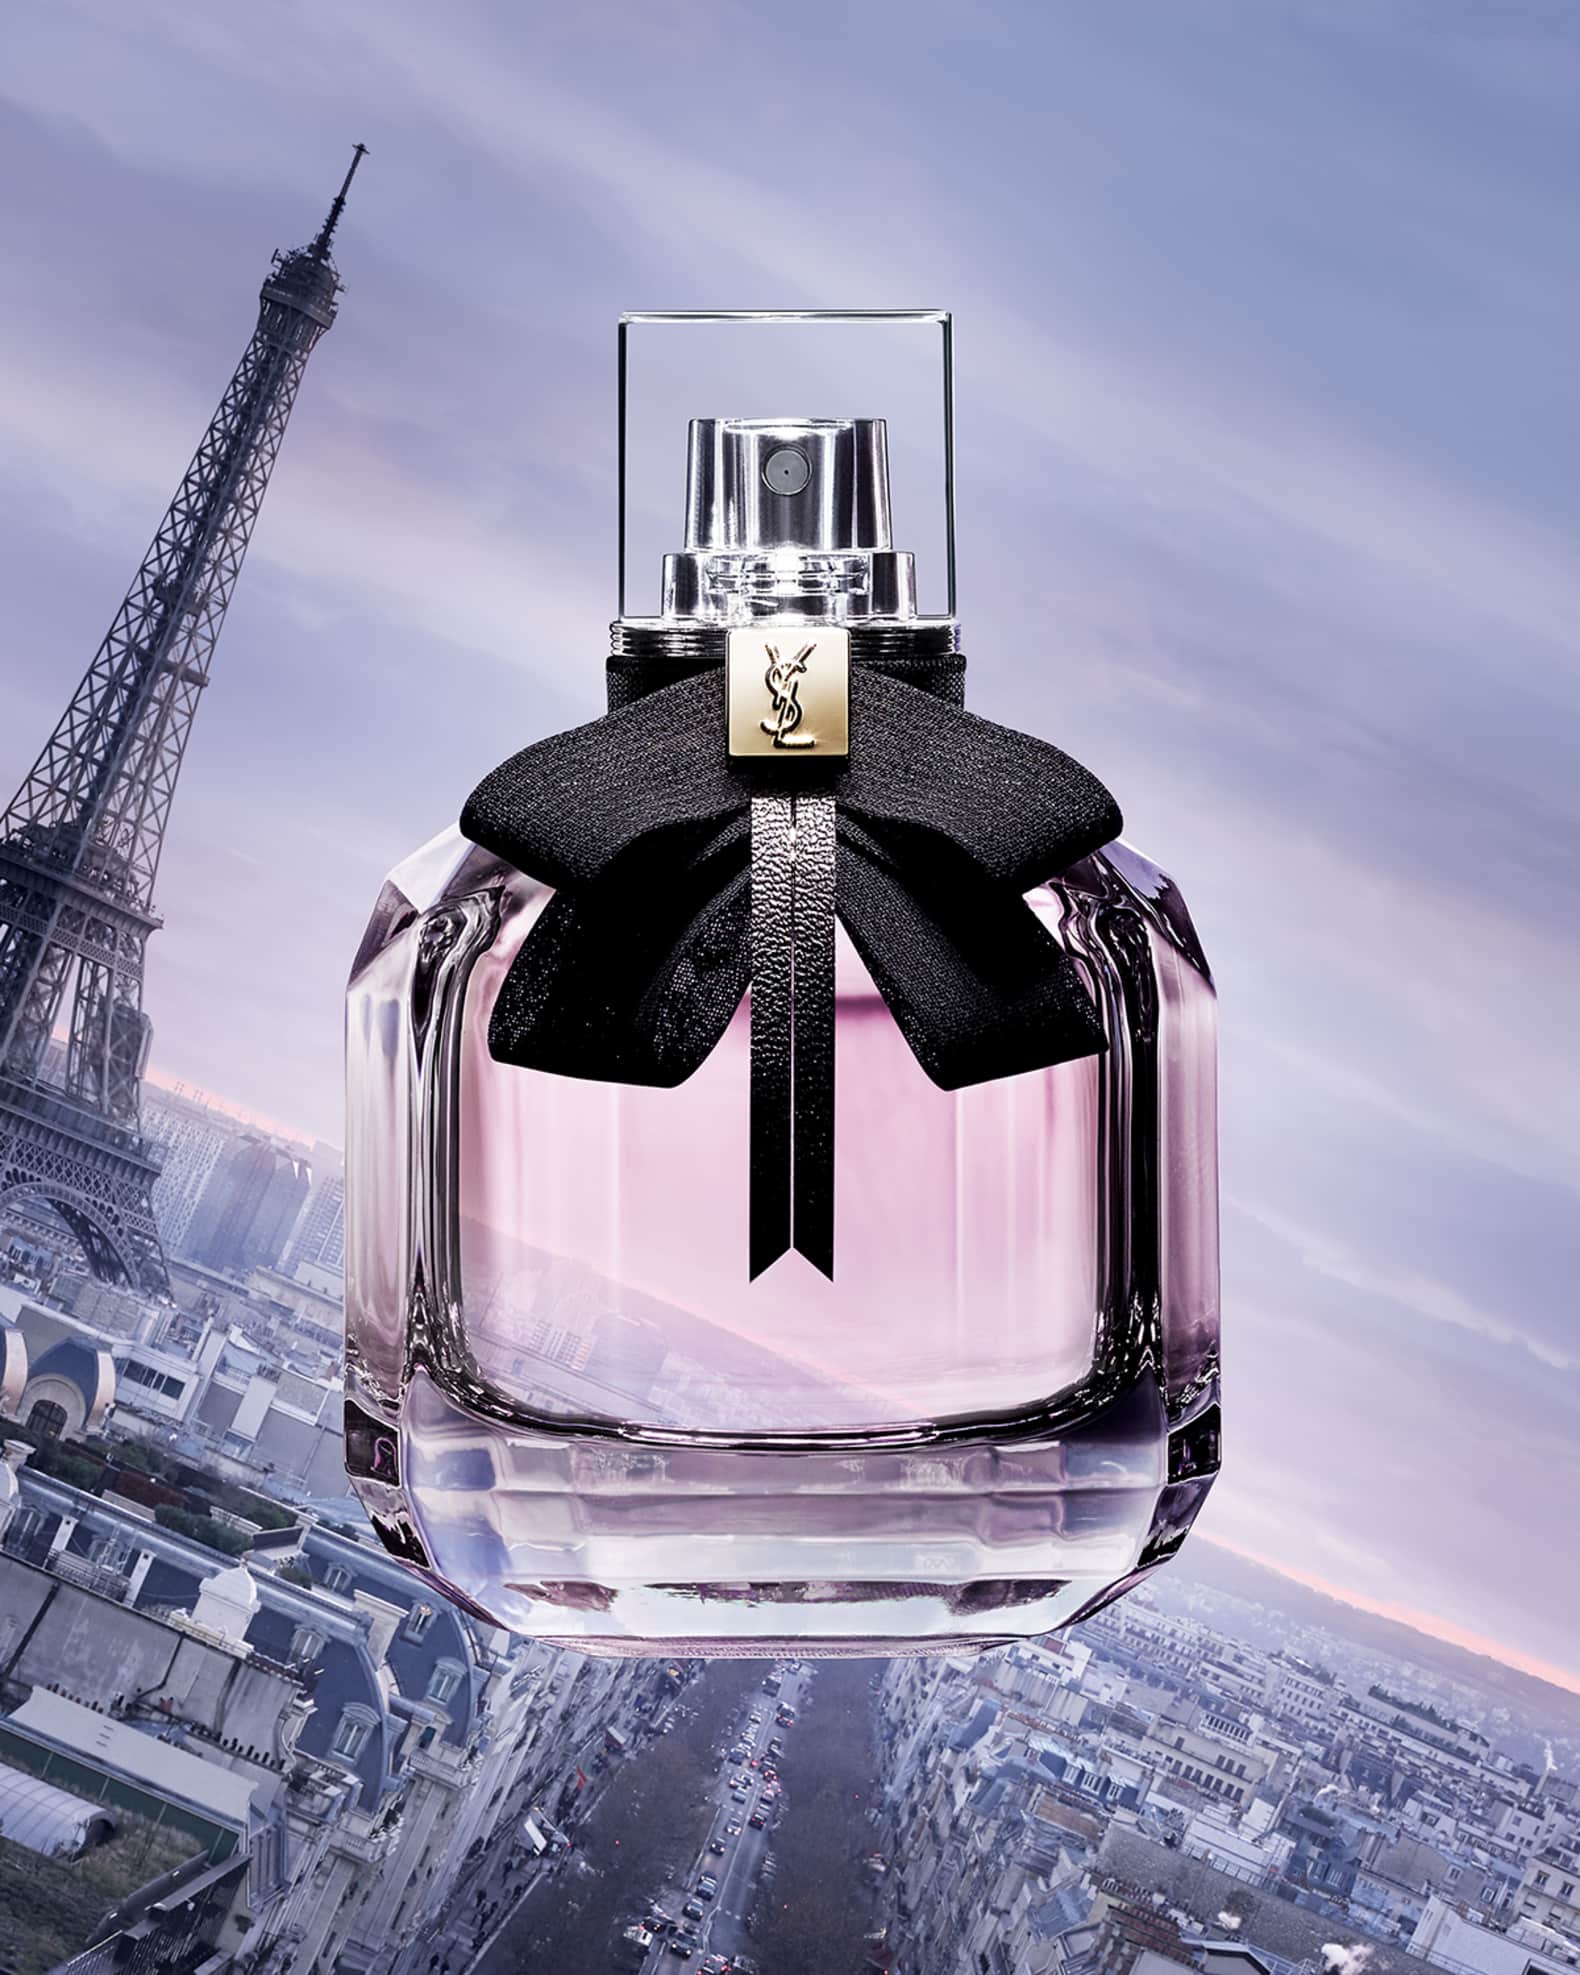 Mon Paris Couture by Yves Saint Laurent Eau de Parfum Spray 3 oz (women)